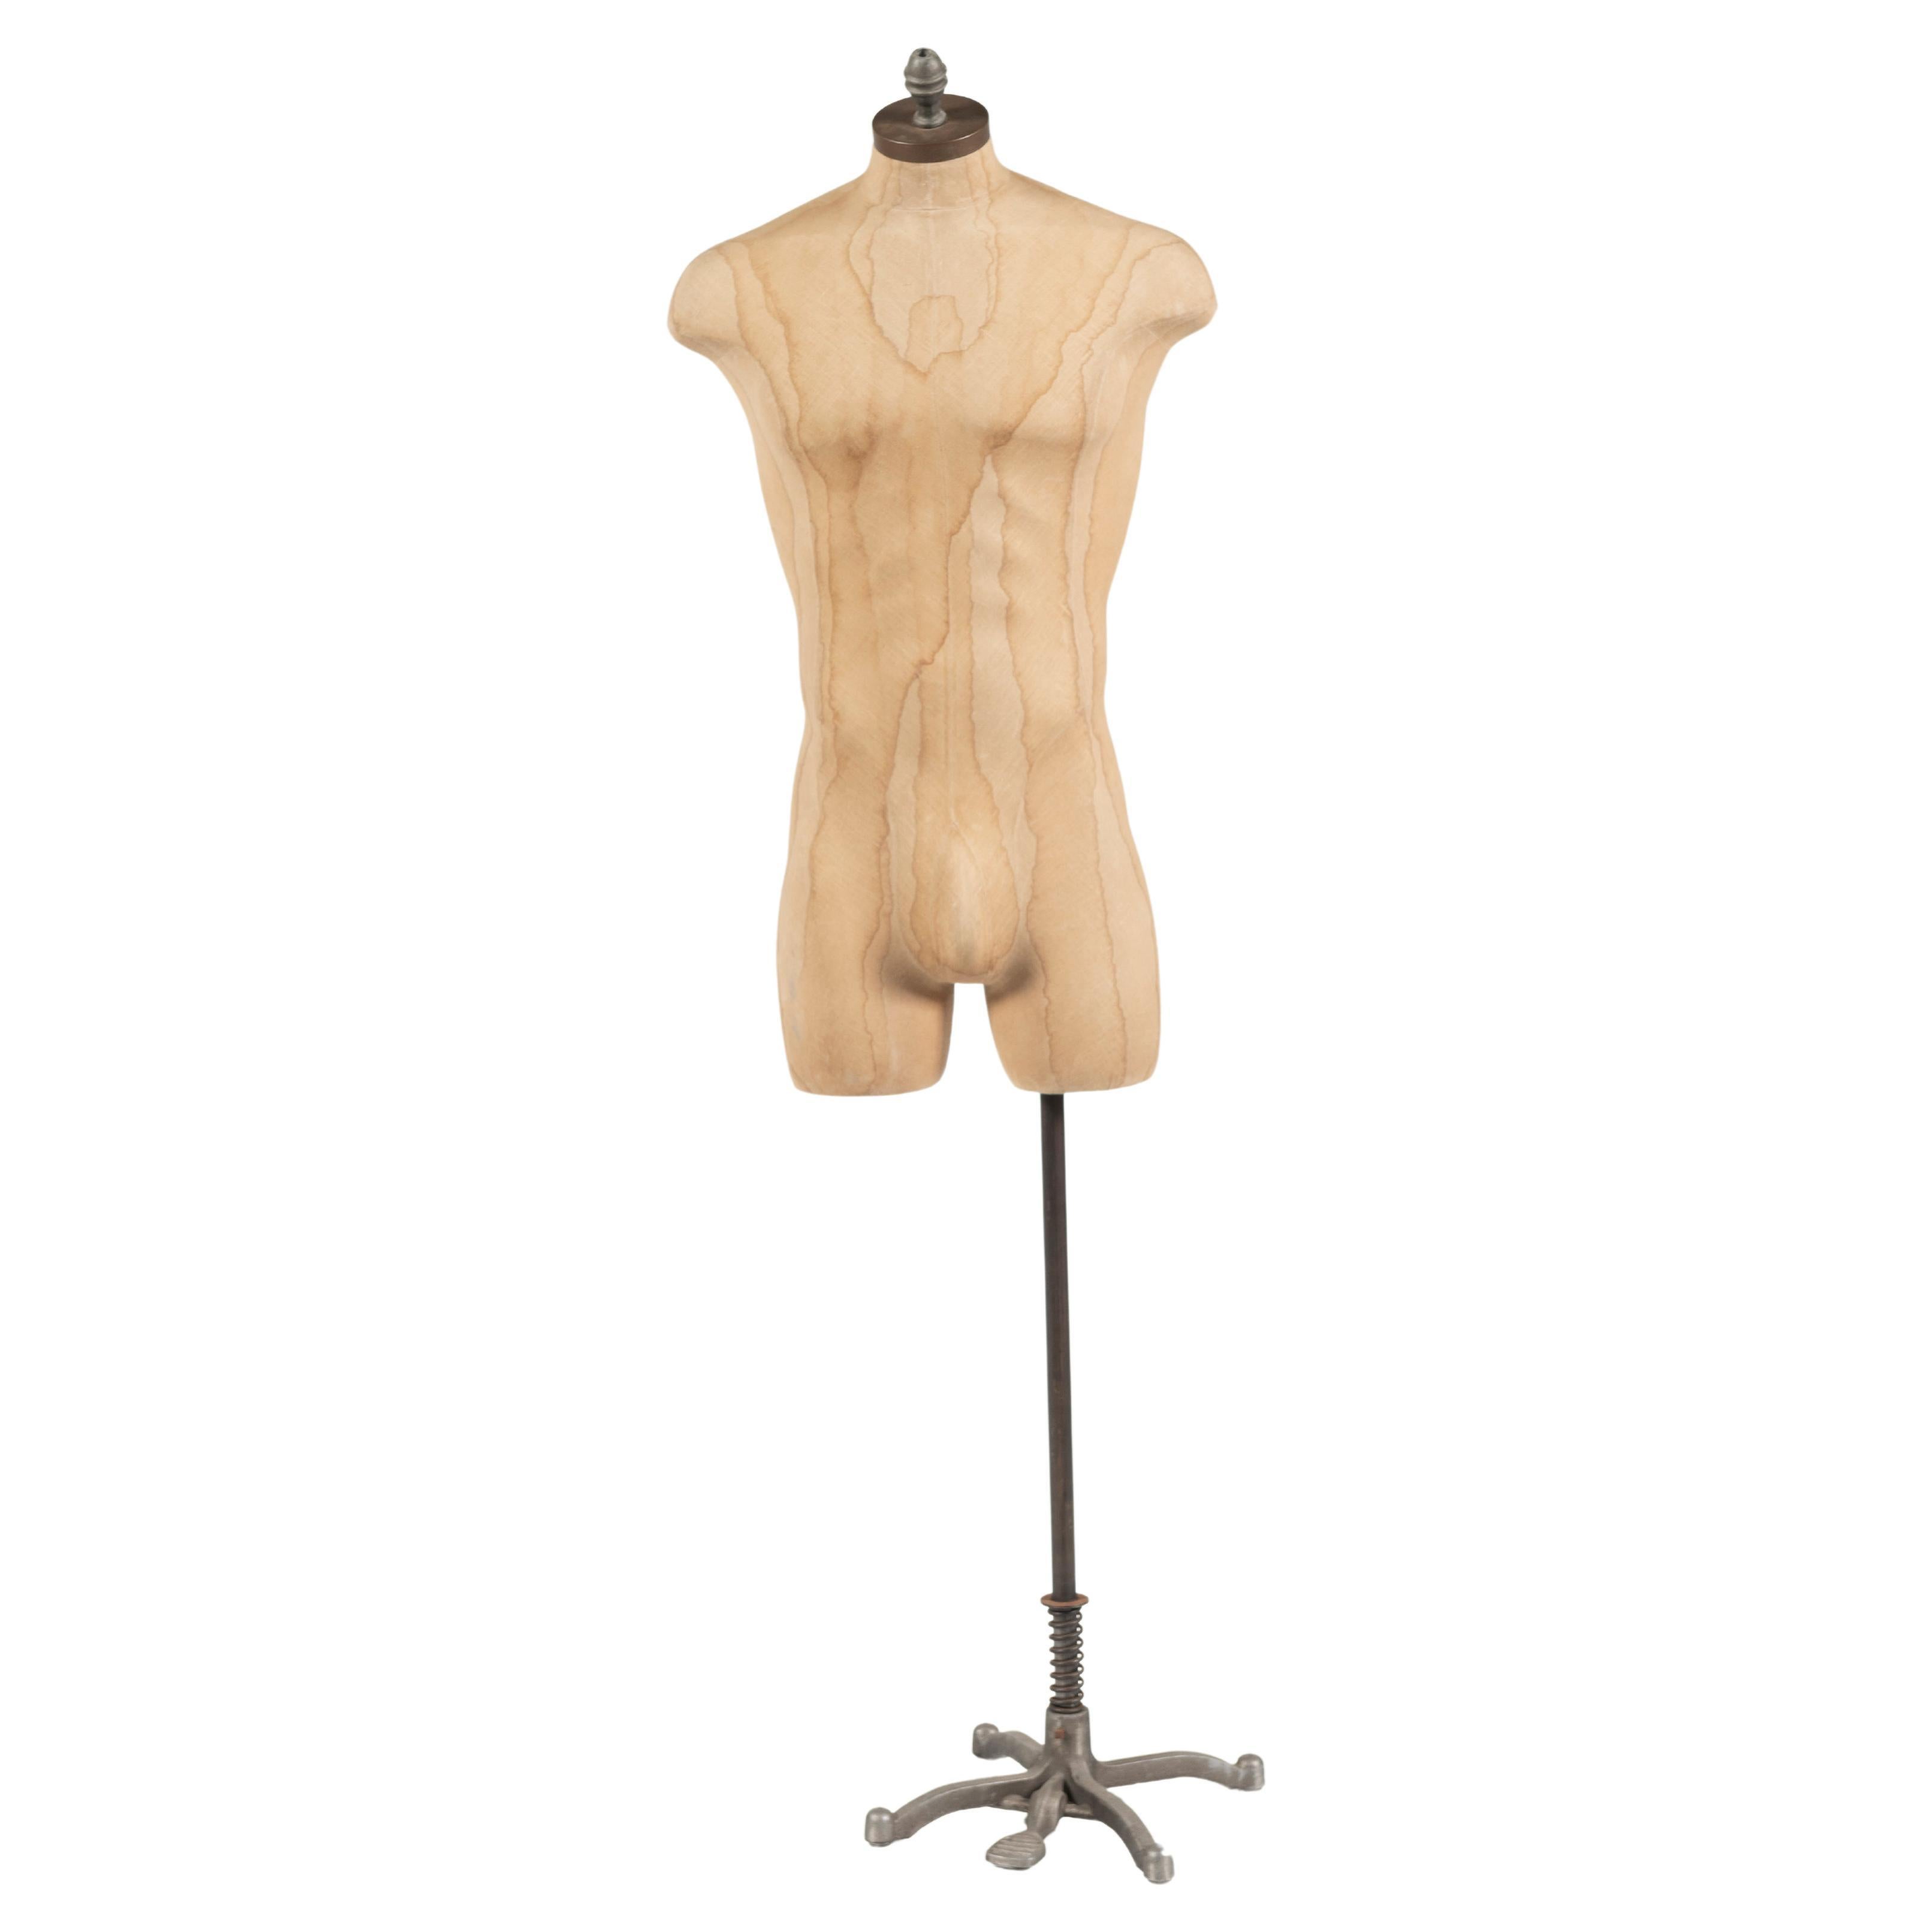 Vintage Male Torso Dress Form/Mannequin on Adjustable Height Stand